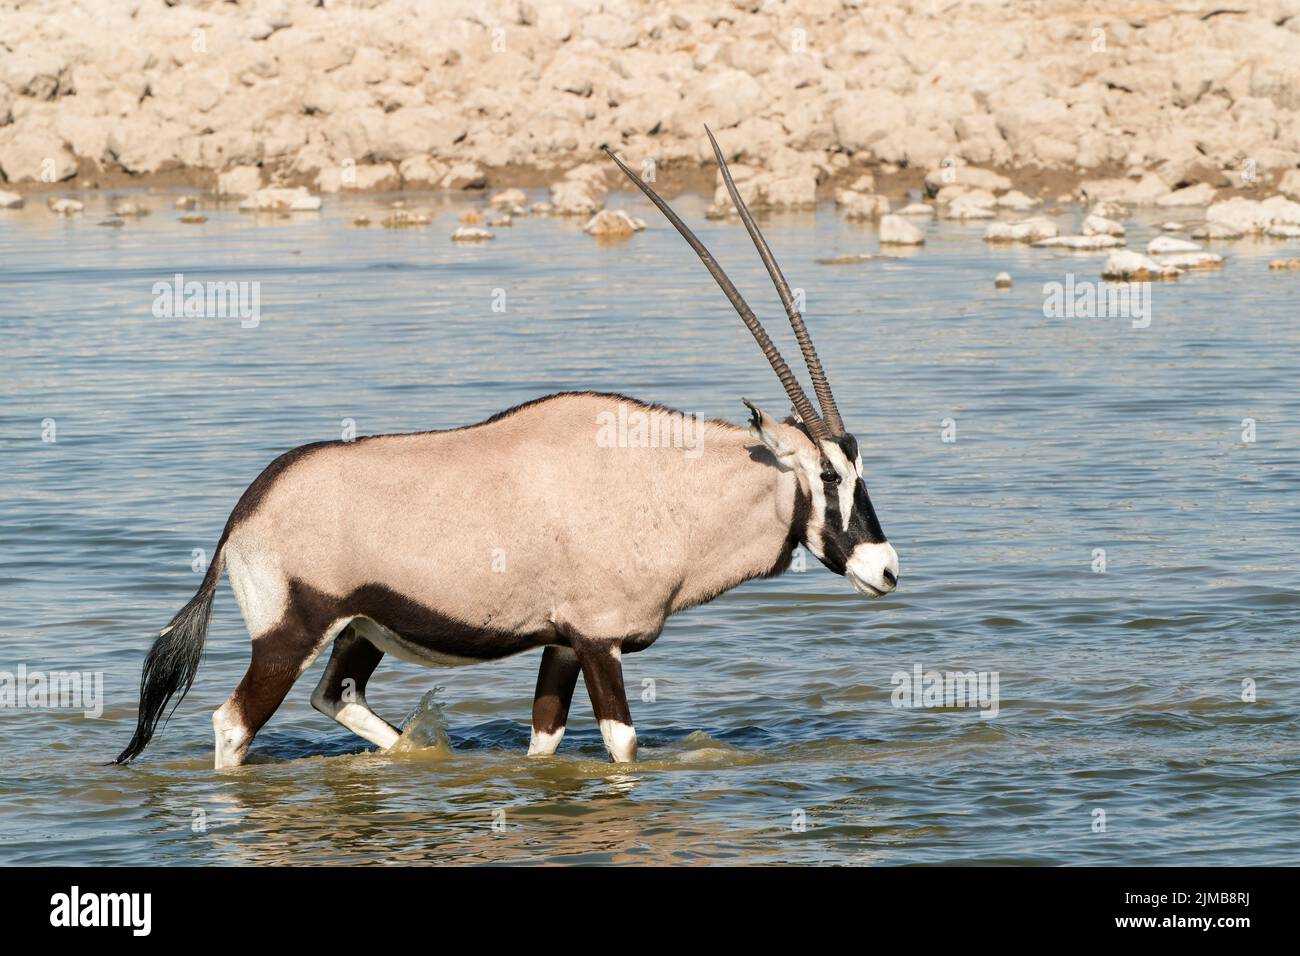 Oryx sud-africain ou antilope gemsbok, Oryx gazella, adulte unique debout dans l'eau, Parc national d'Etosha, Namibie Banque D'Images